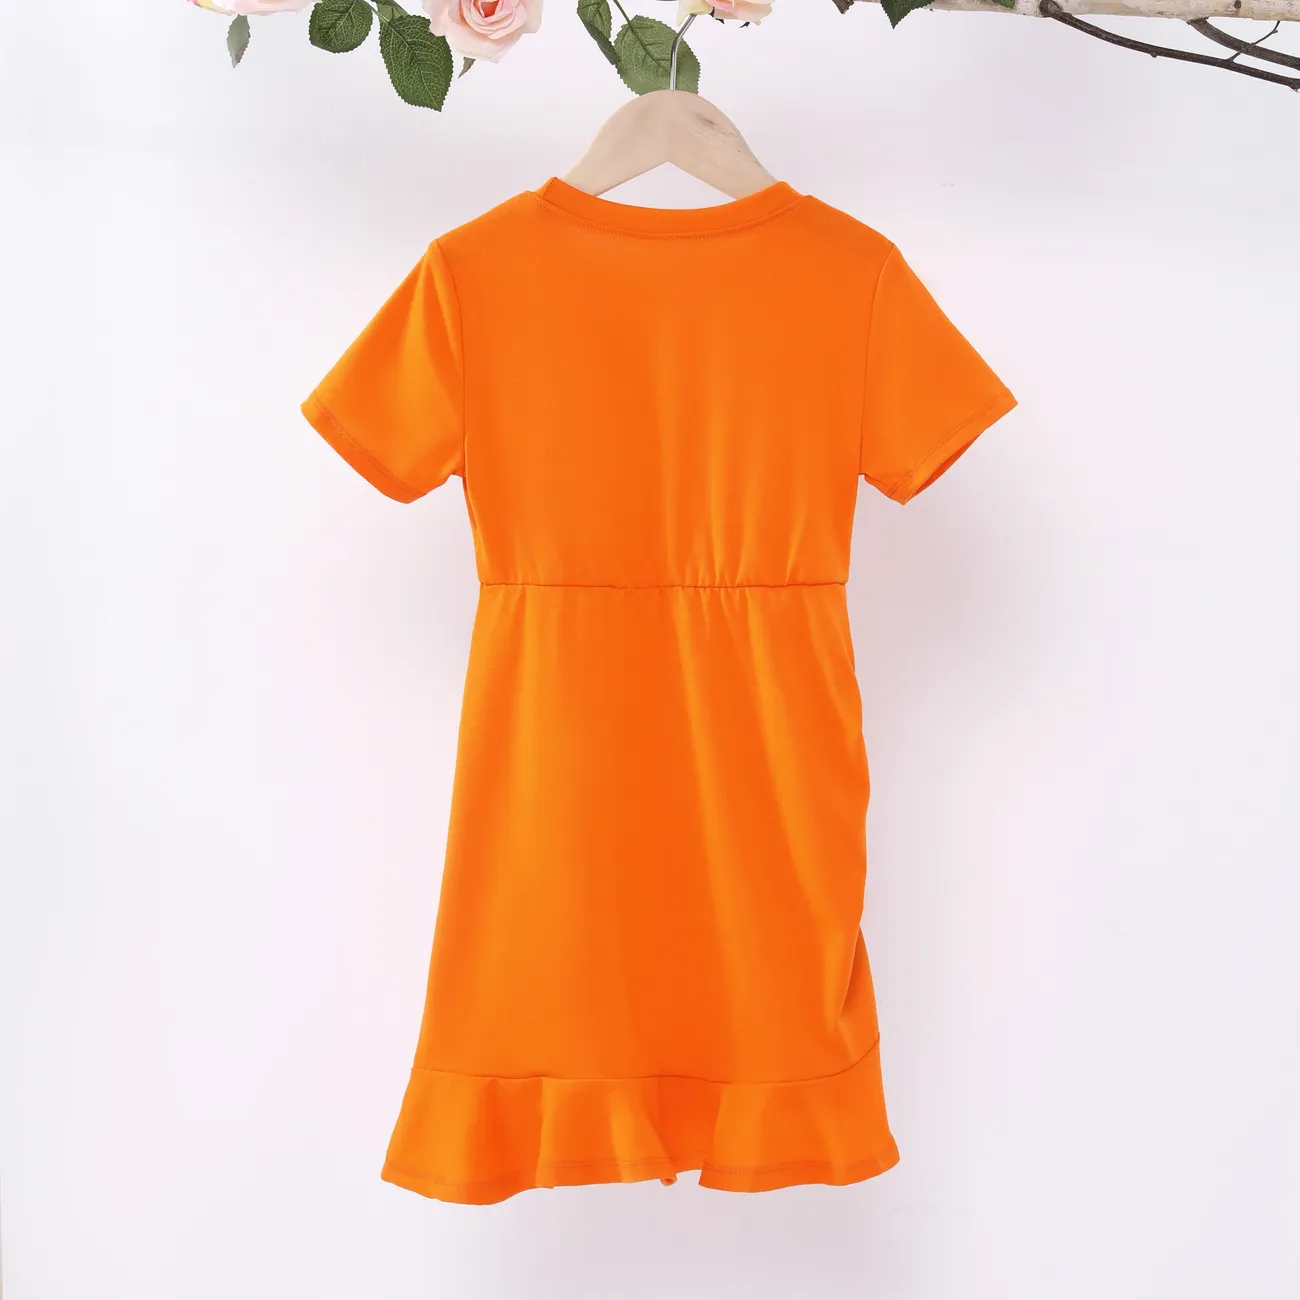 Chicos Chica Cordón Color liso Vestidos Naranja big image 1